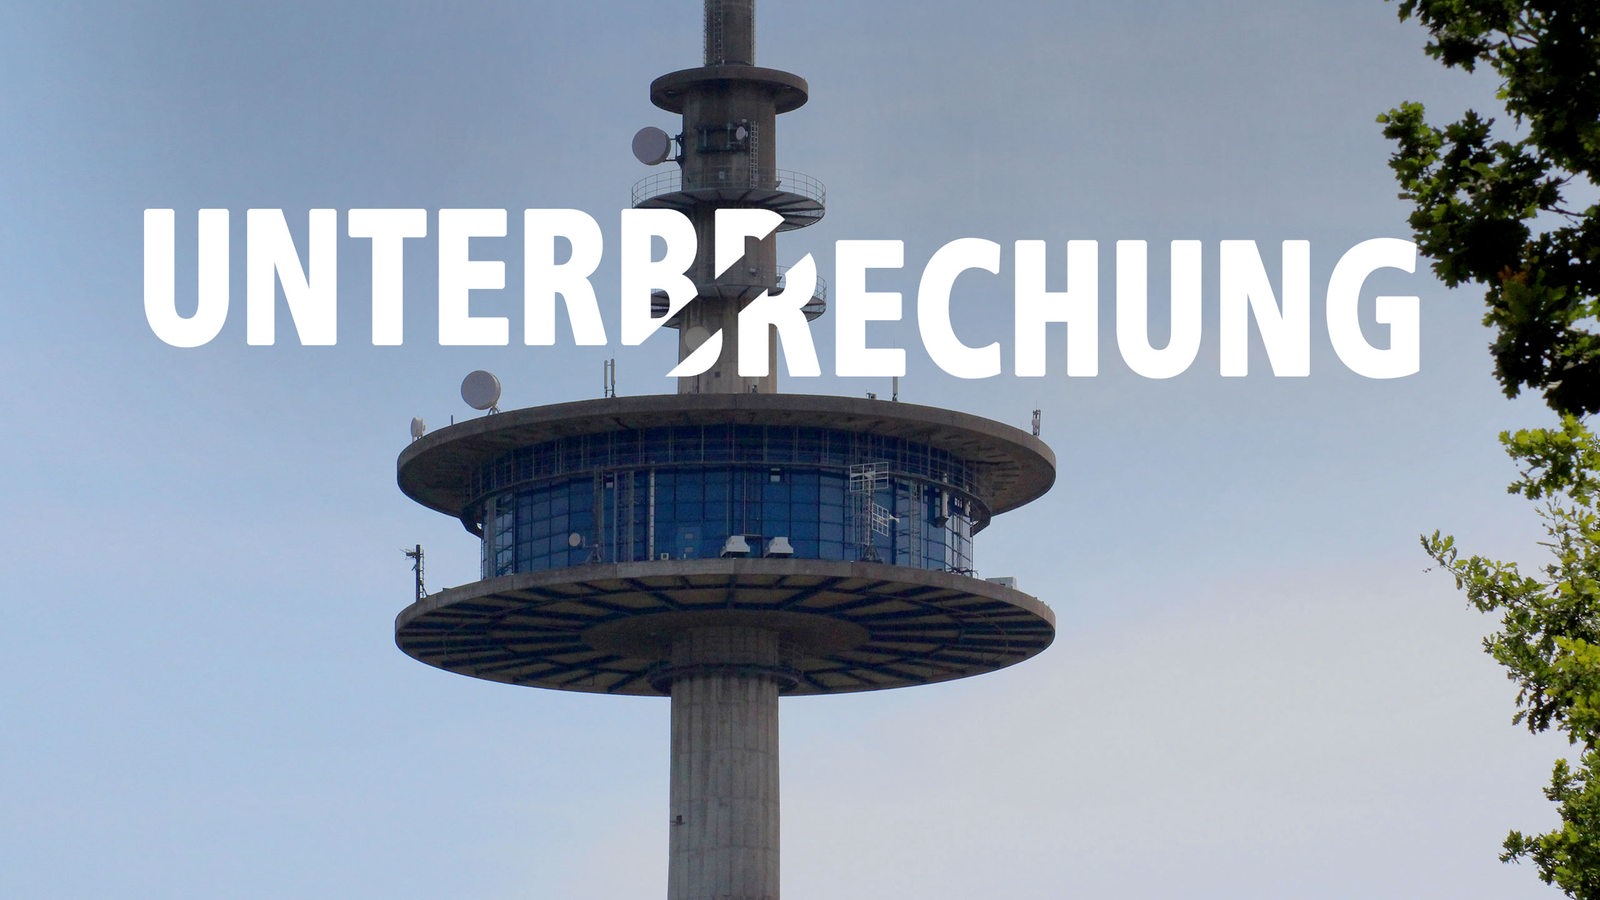 Fernmeldeturm Schiffdorf mit dem Wort "Unterbrechung".